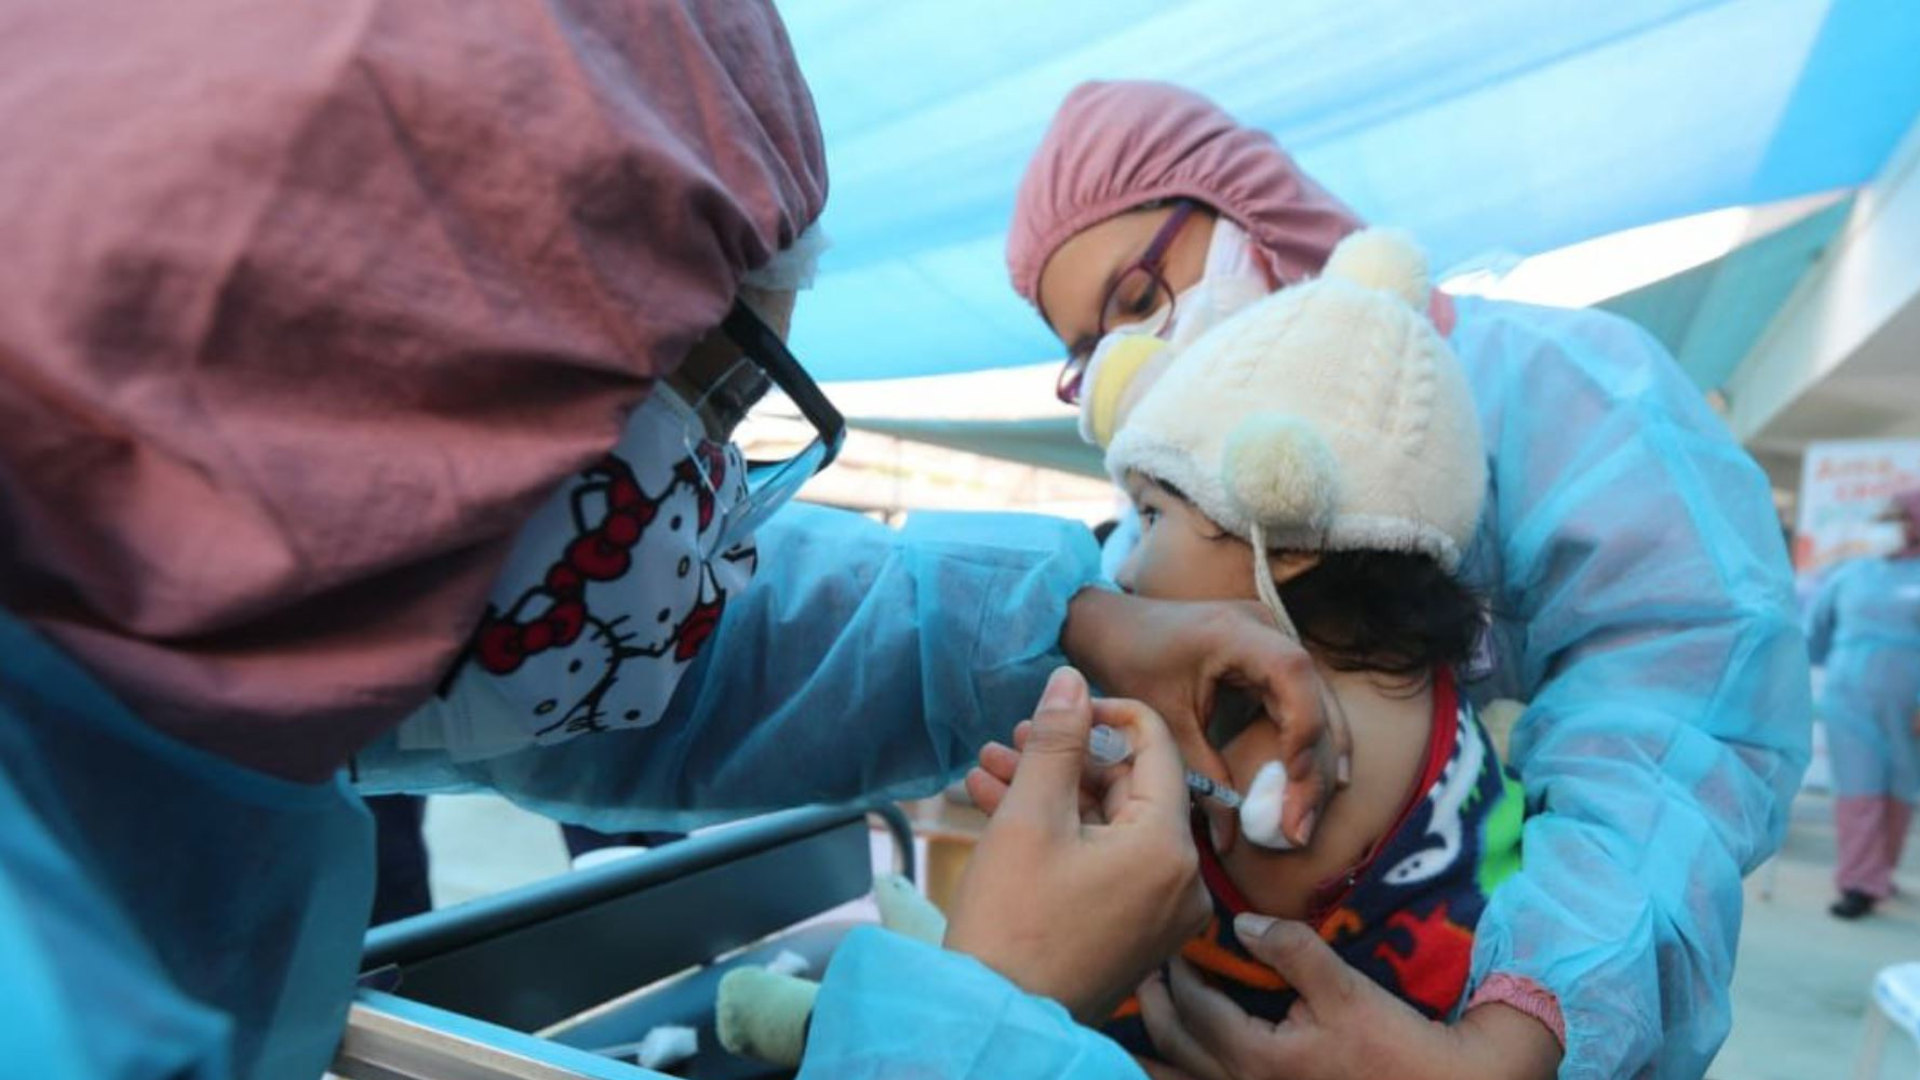 Gobierno declara en emergencia sanitaria en 12 regiones por polio y sarampión.
Foto: Andina